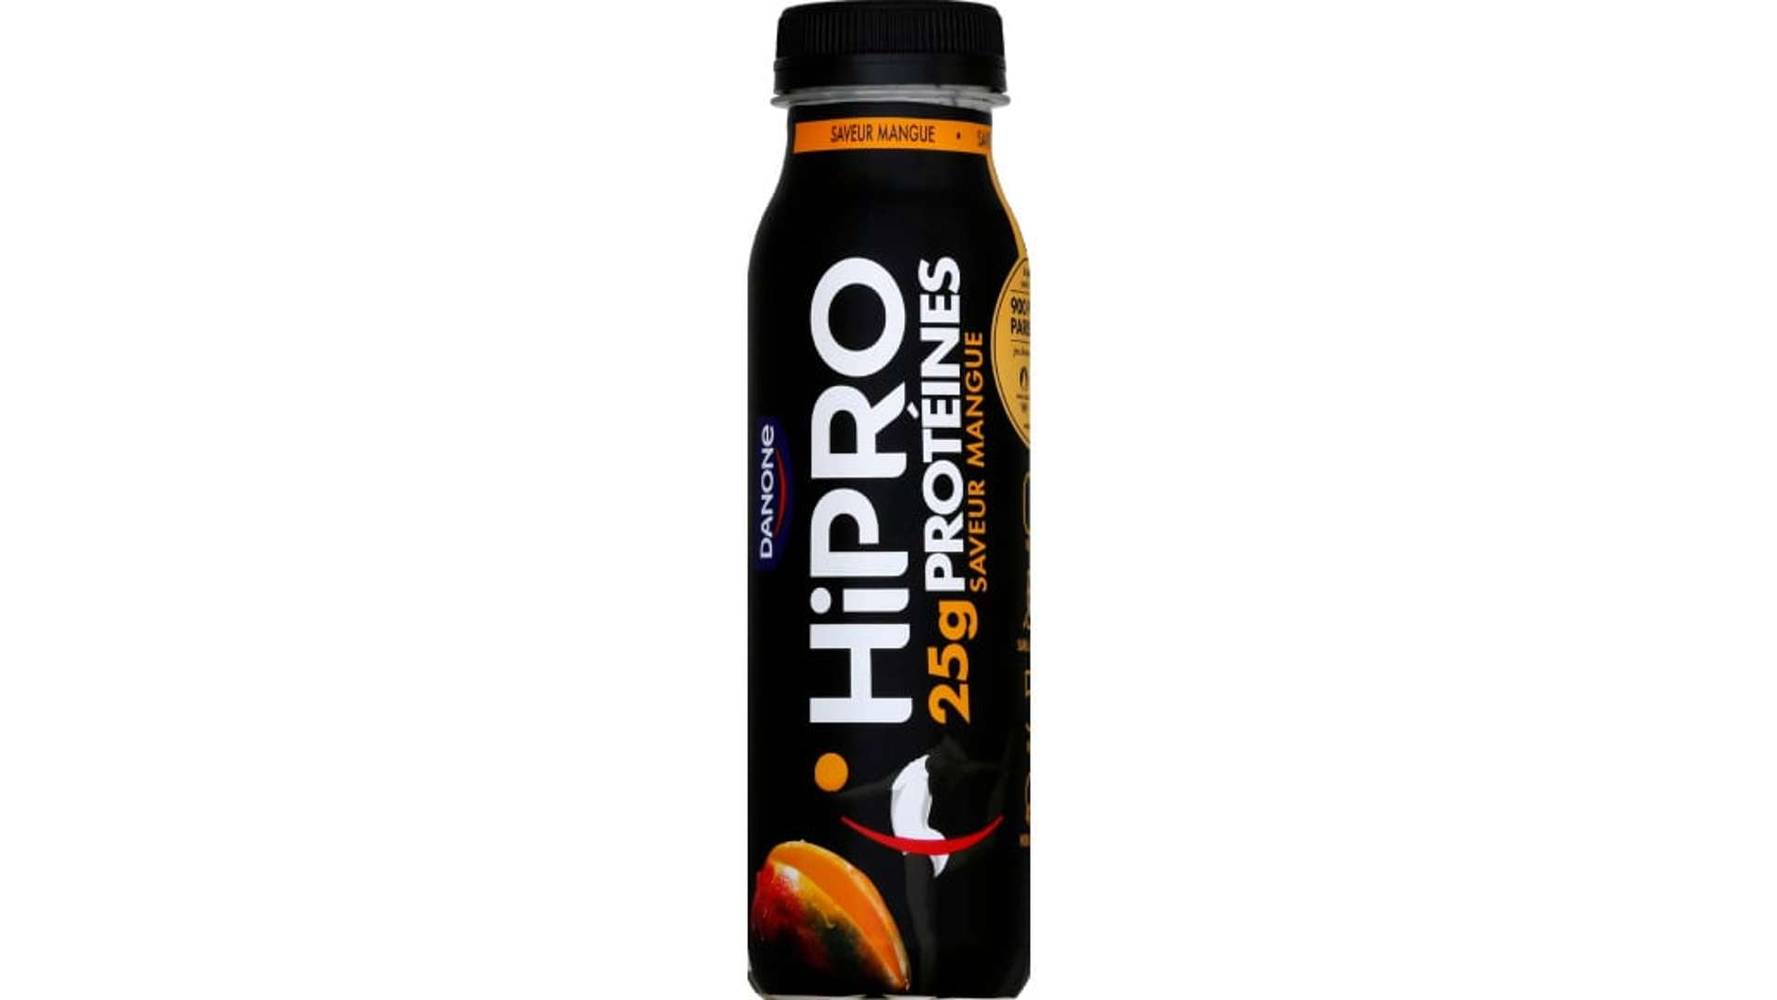 HIPRO Yaourt à boire saveur mangue protéiné 0% mg La bouteille de 300g